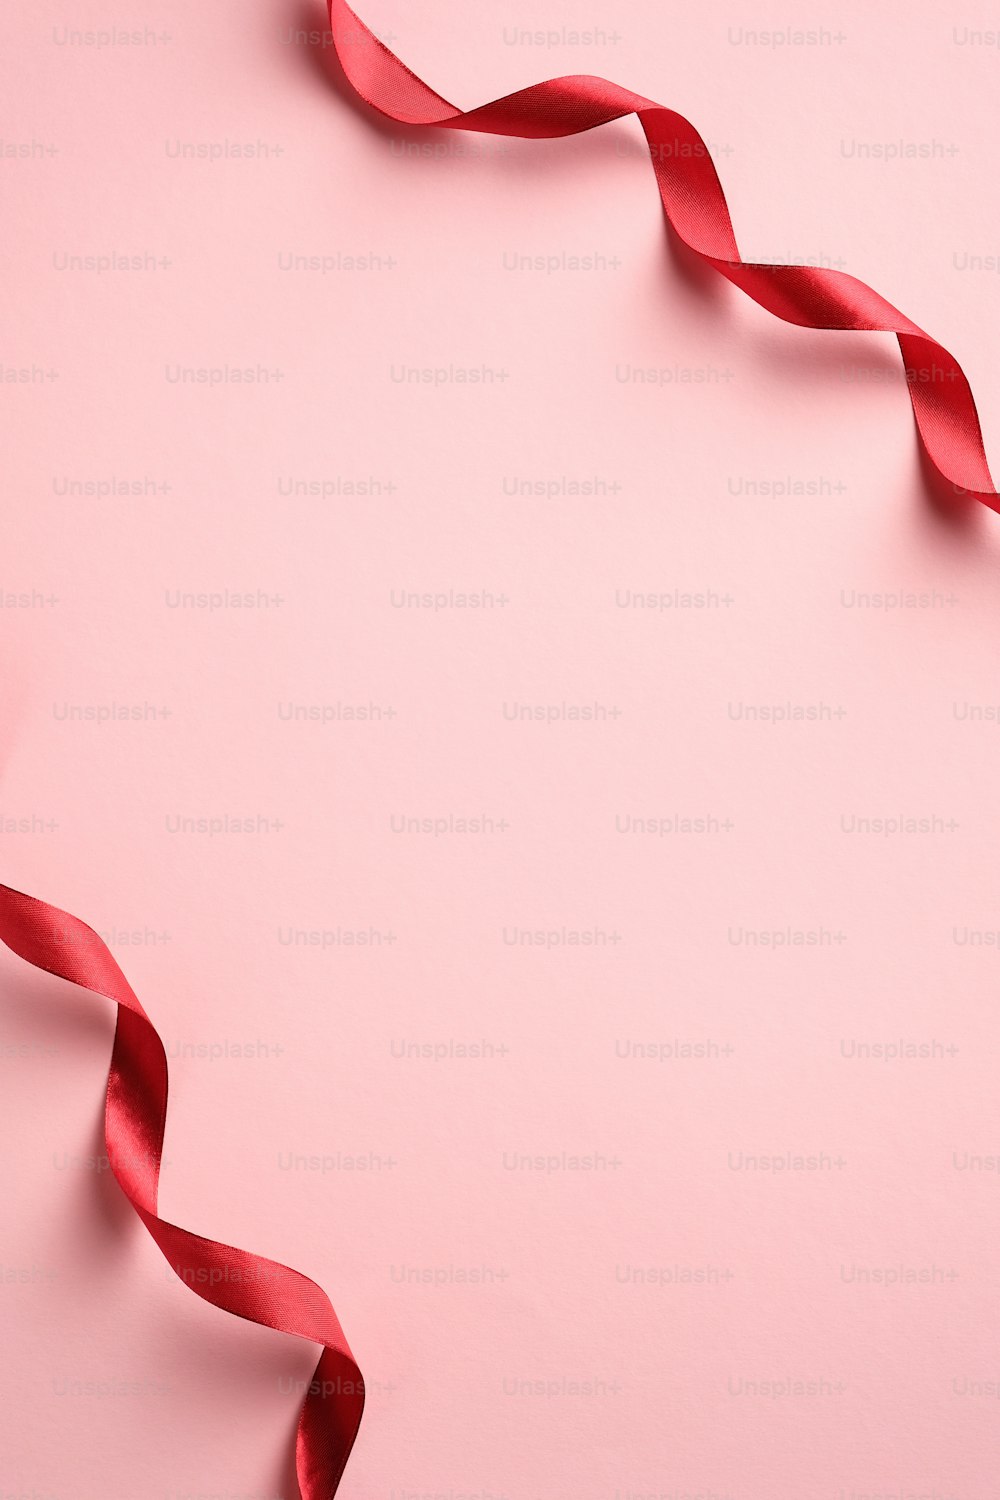 Dia dos Namorados, Aniversário, Modelo de banner vertical do Dia das Mães com fita vermelha no fundo rosa. Estilo minimalista. Flat lay, vista superior.